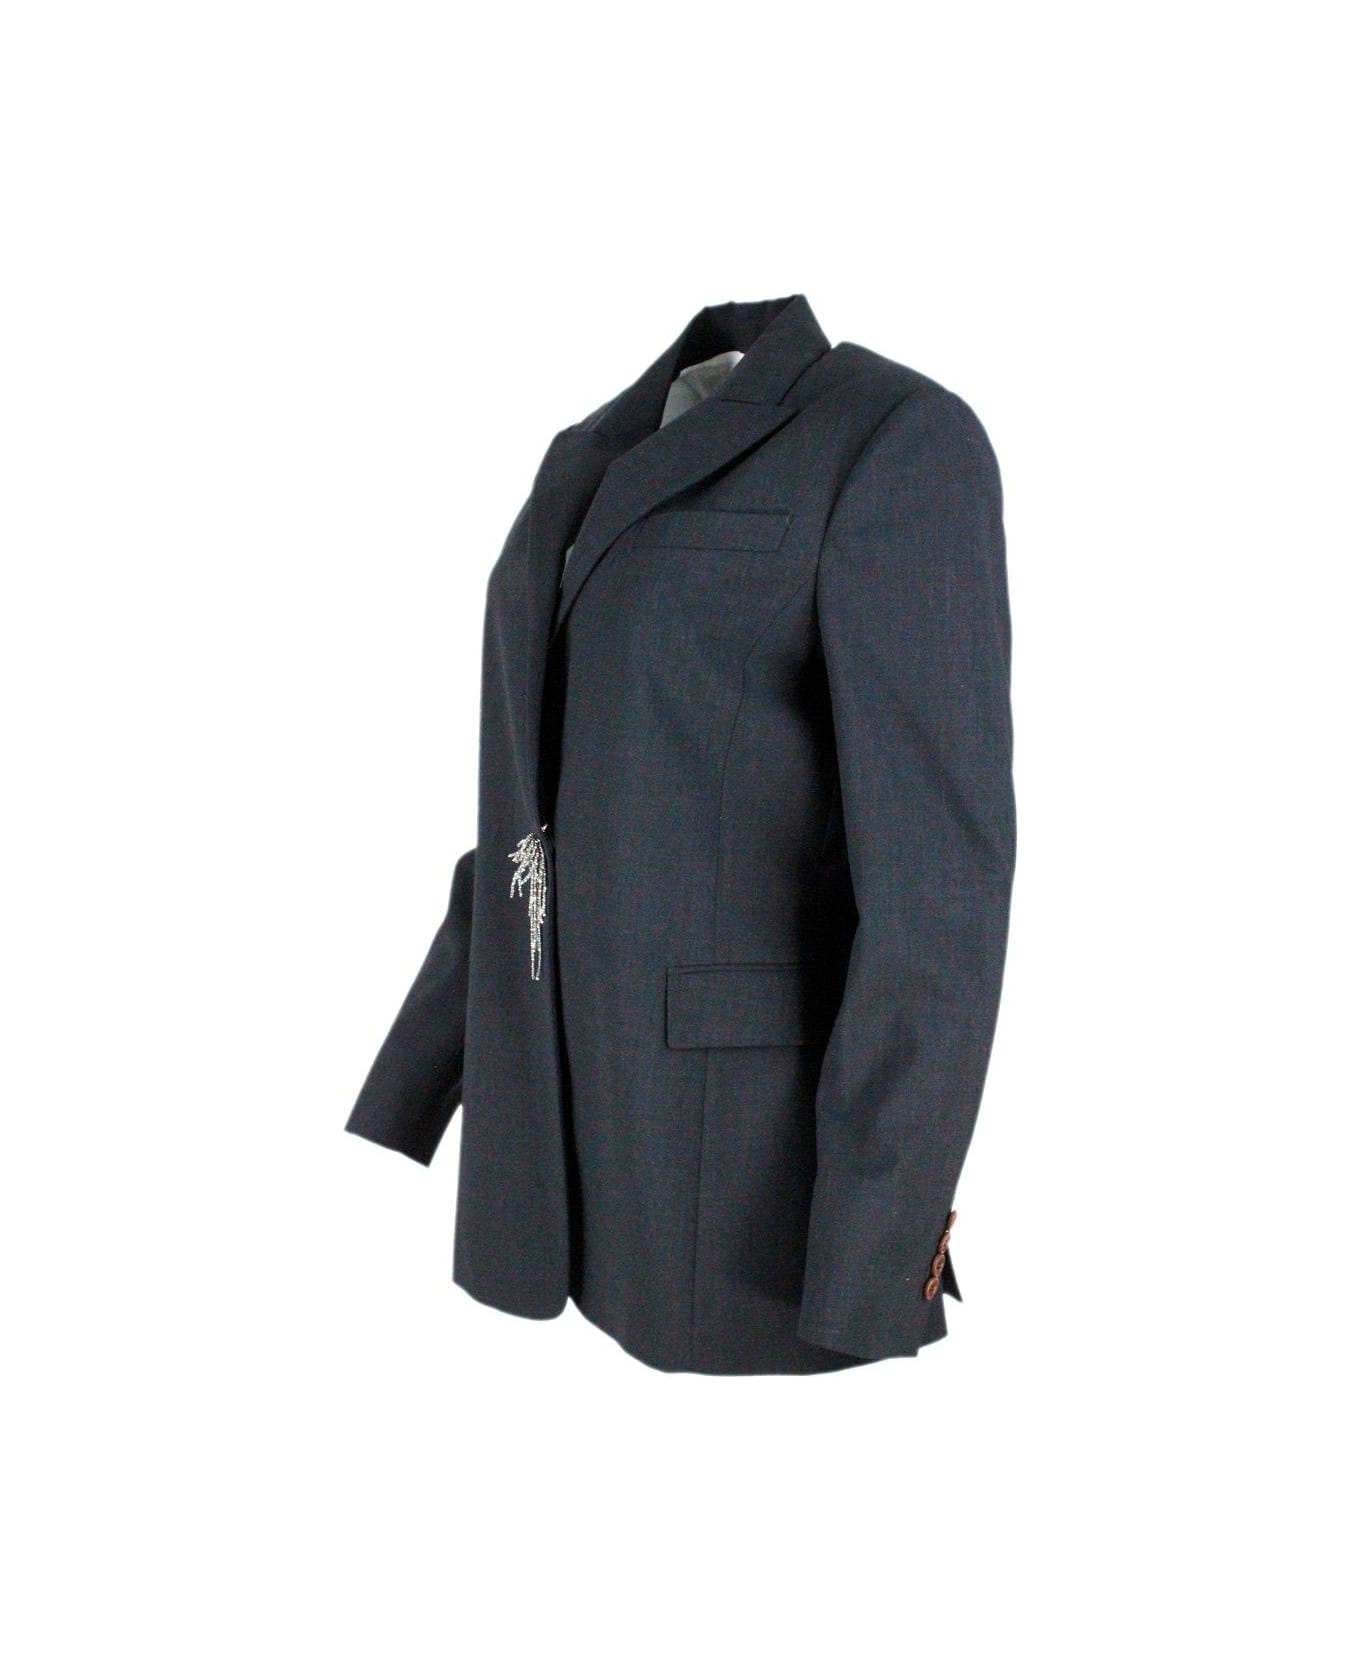 Brunello Cucinelli Pin Embellished Tailored Blazer - Grey Dark ブレザー